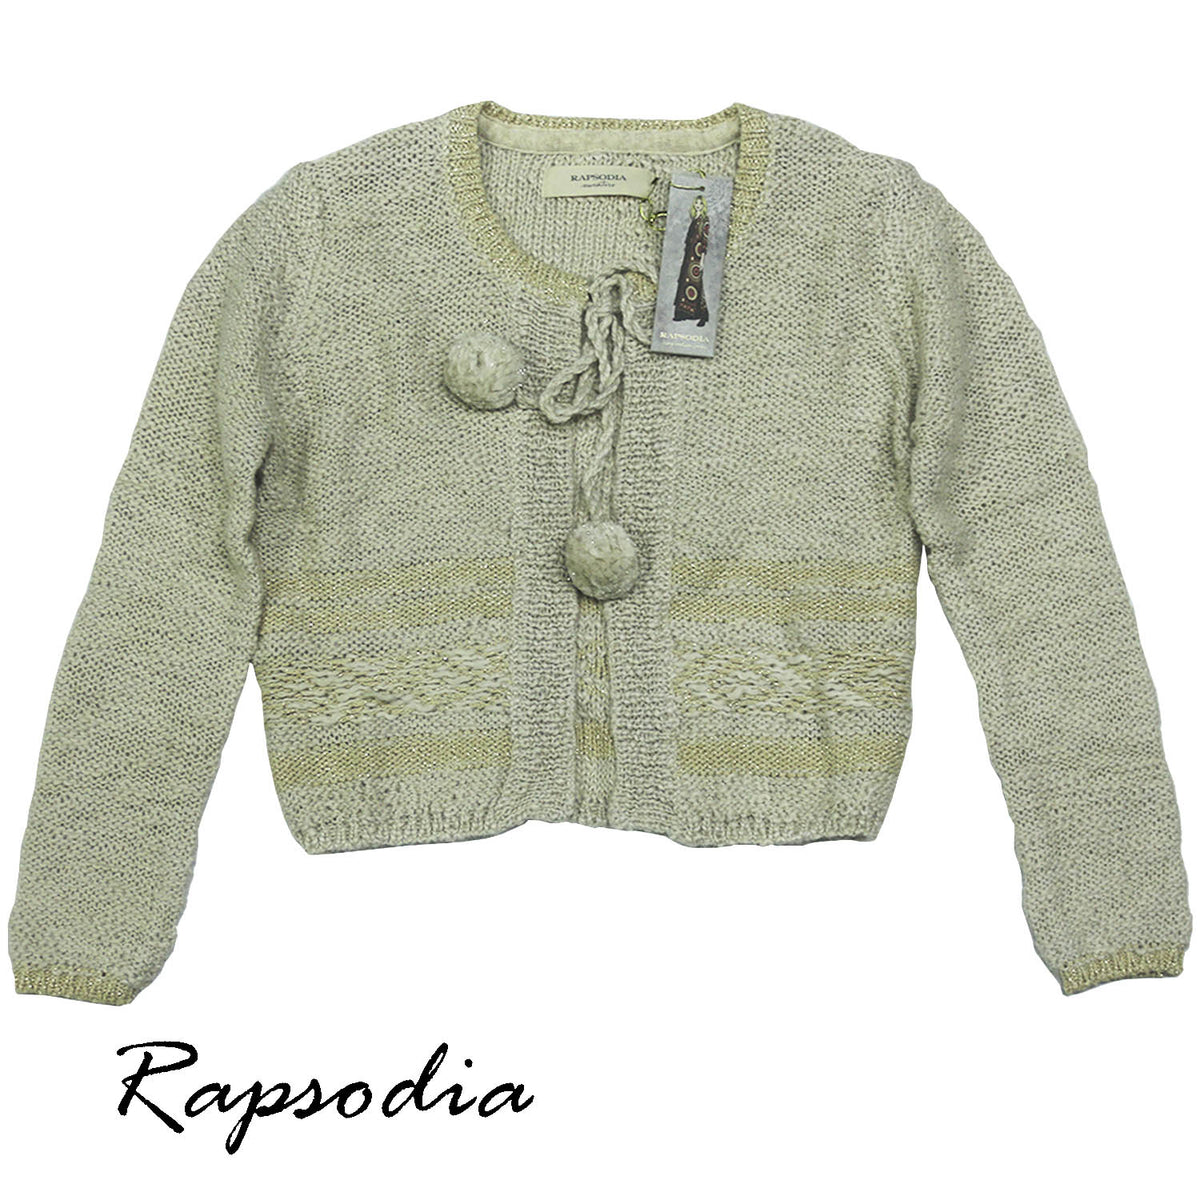 Sweater Rapsodia Apolo Crudo